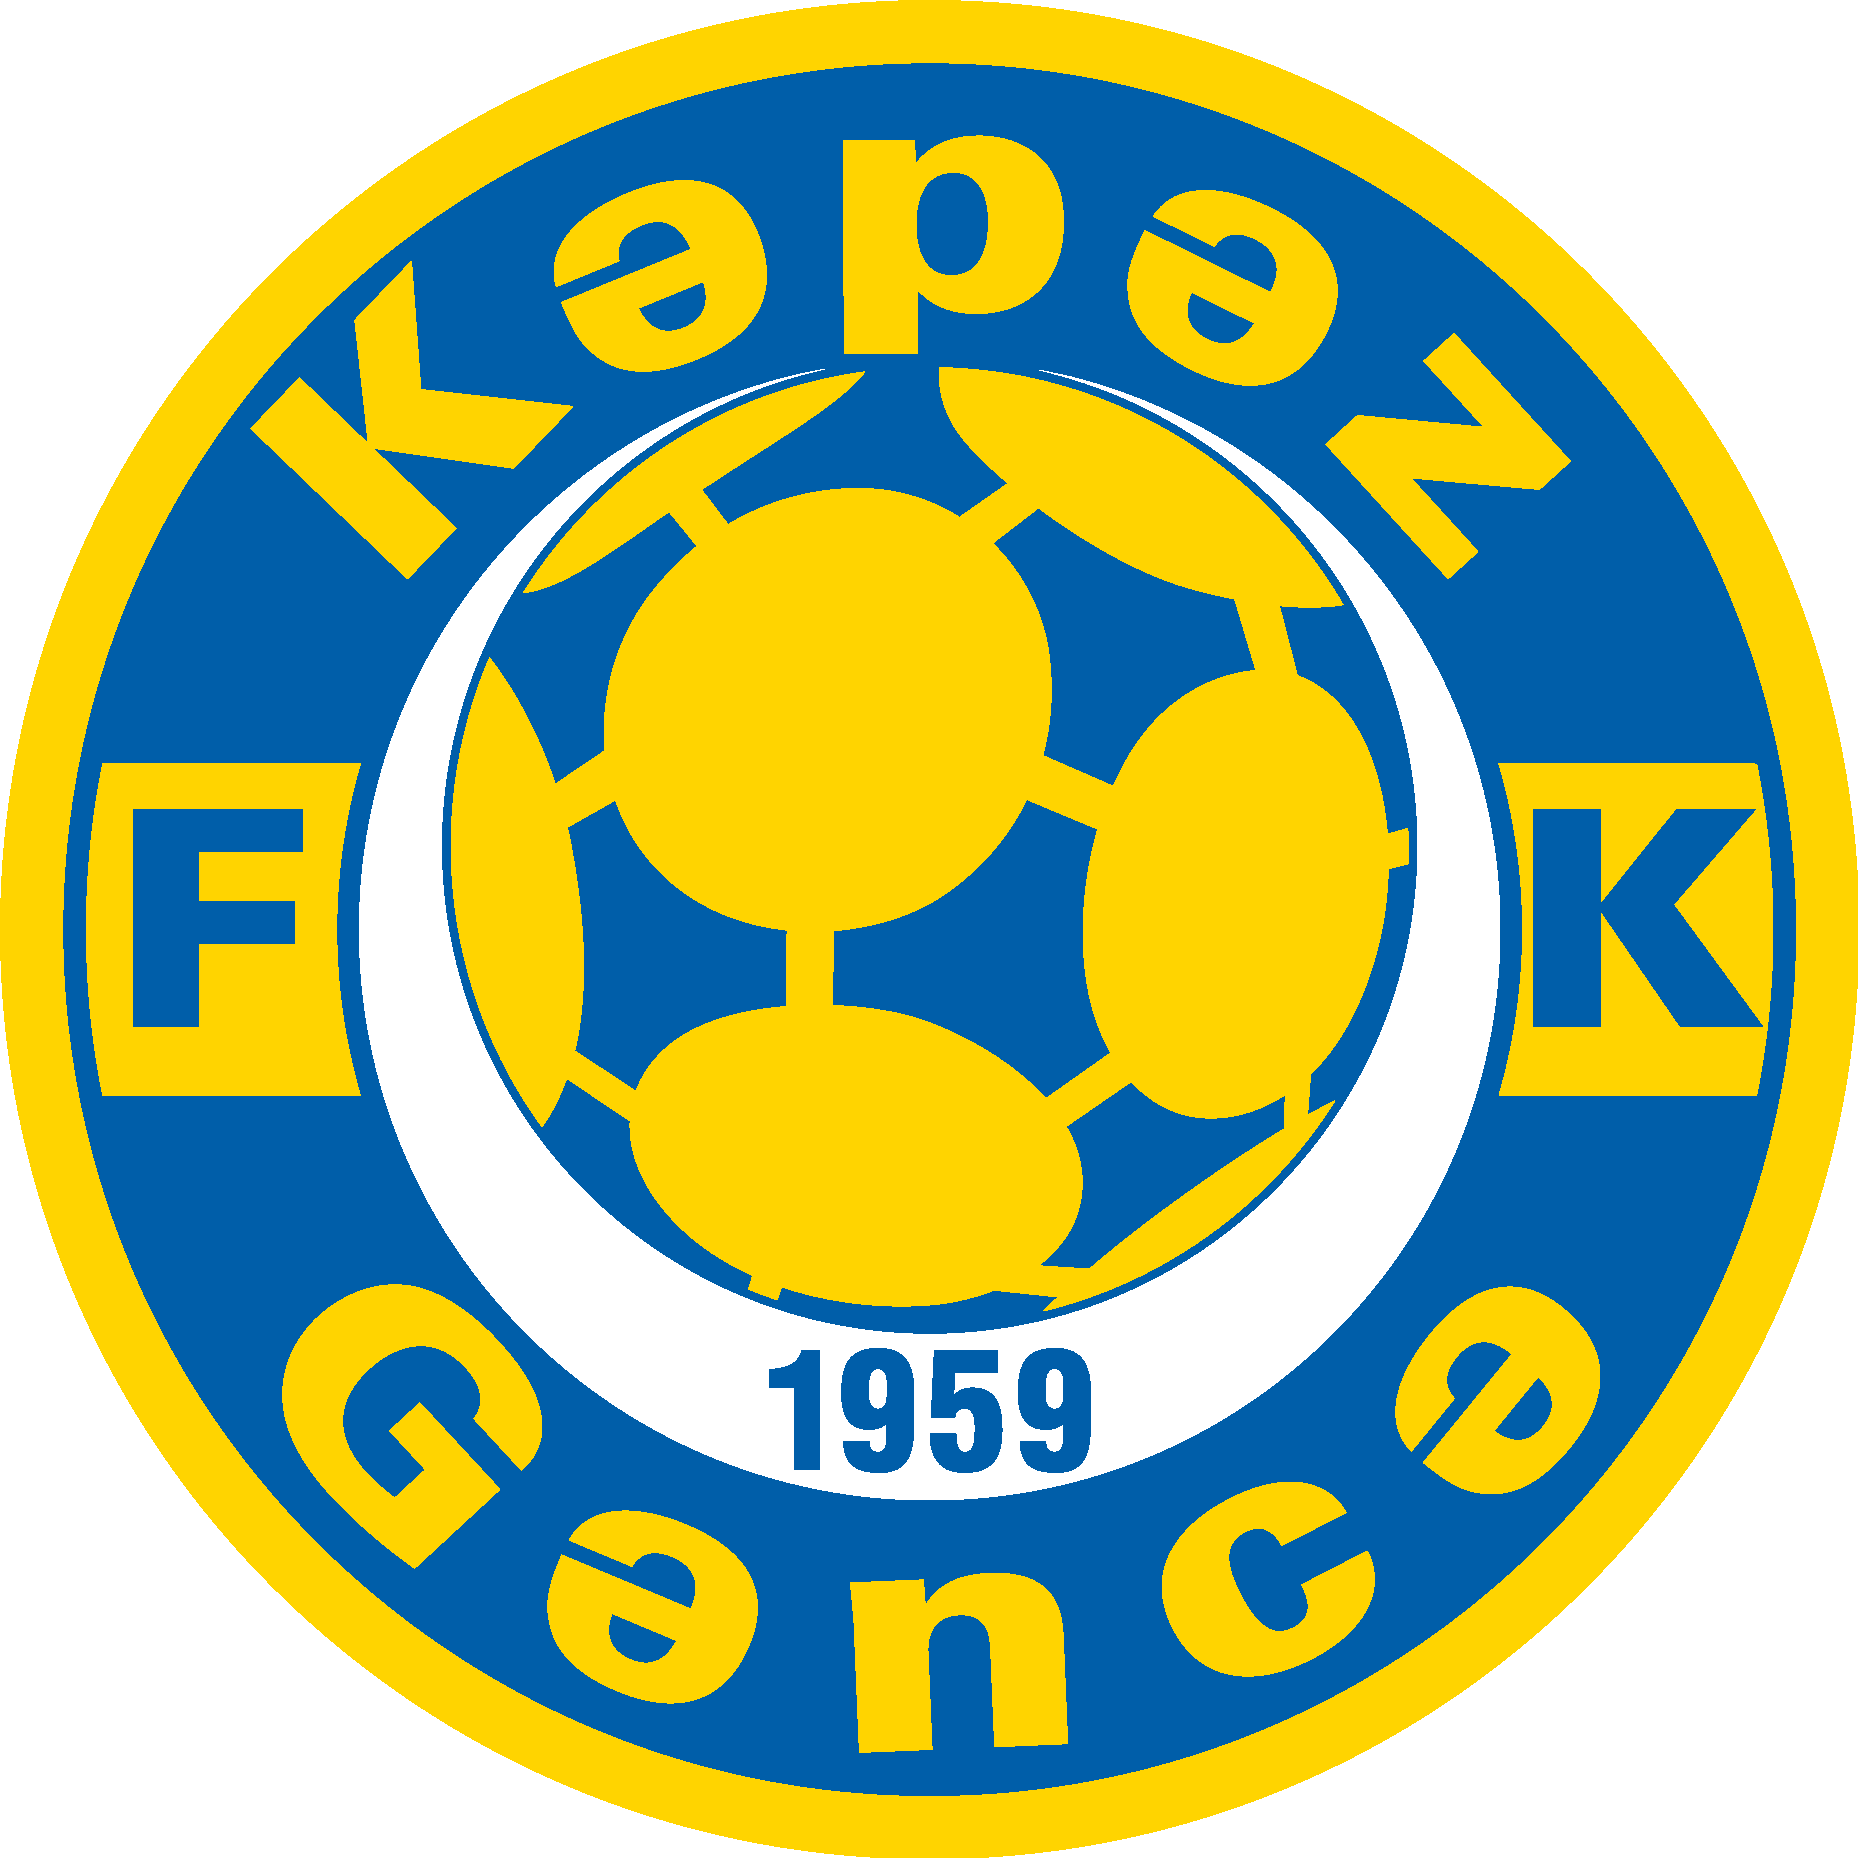 FK Kəpəz Gəncə Logo Vector